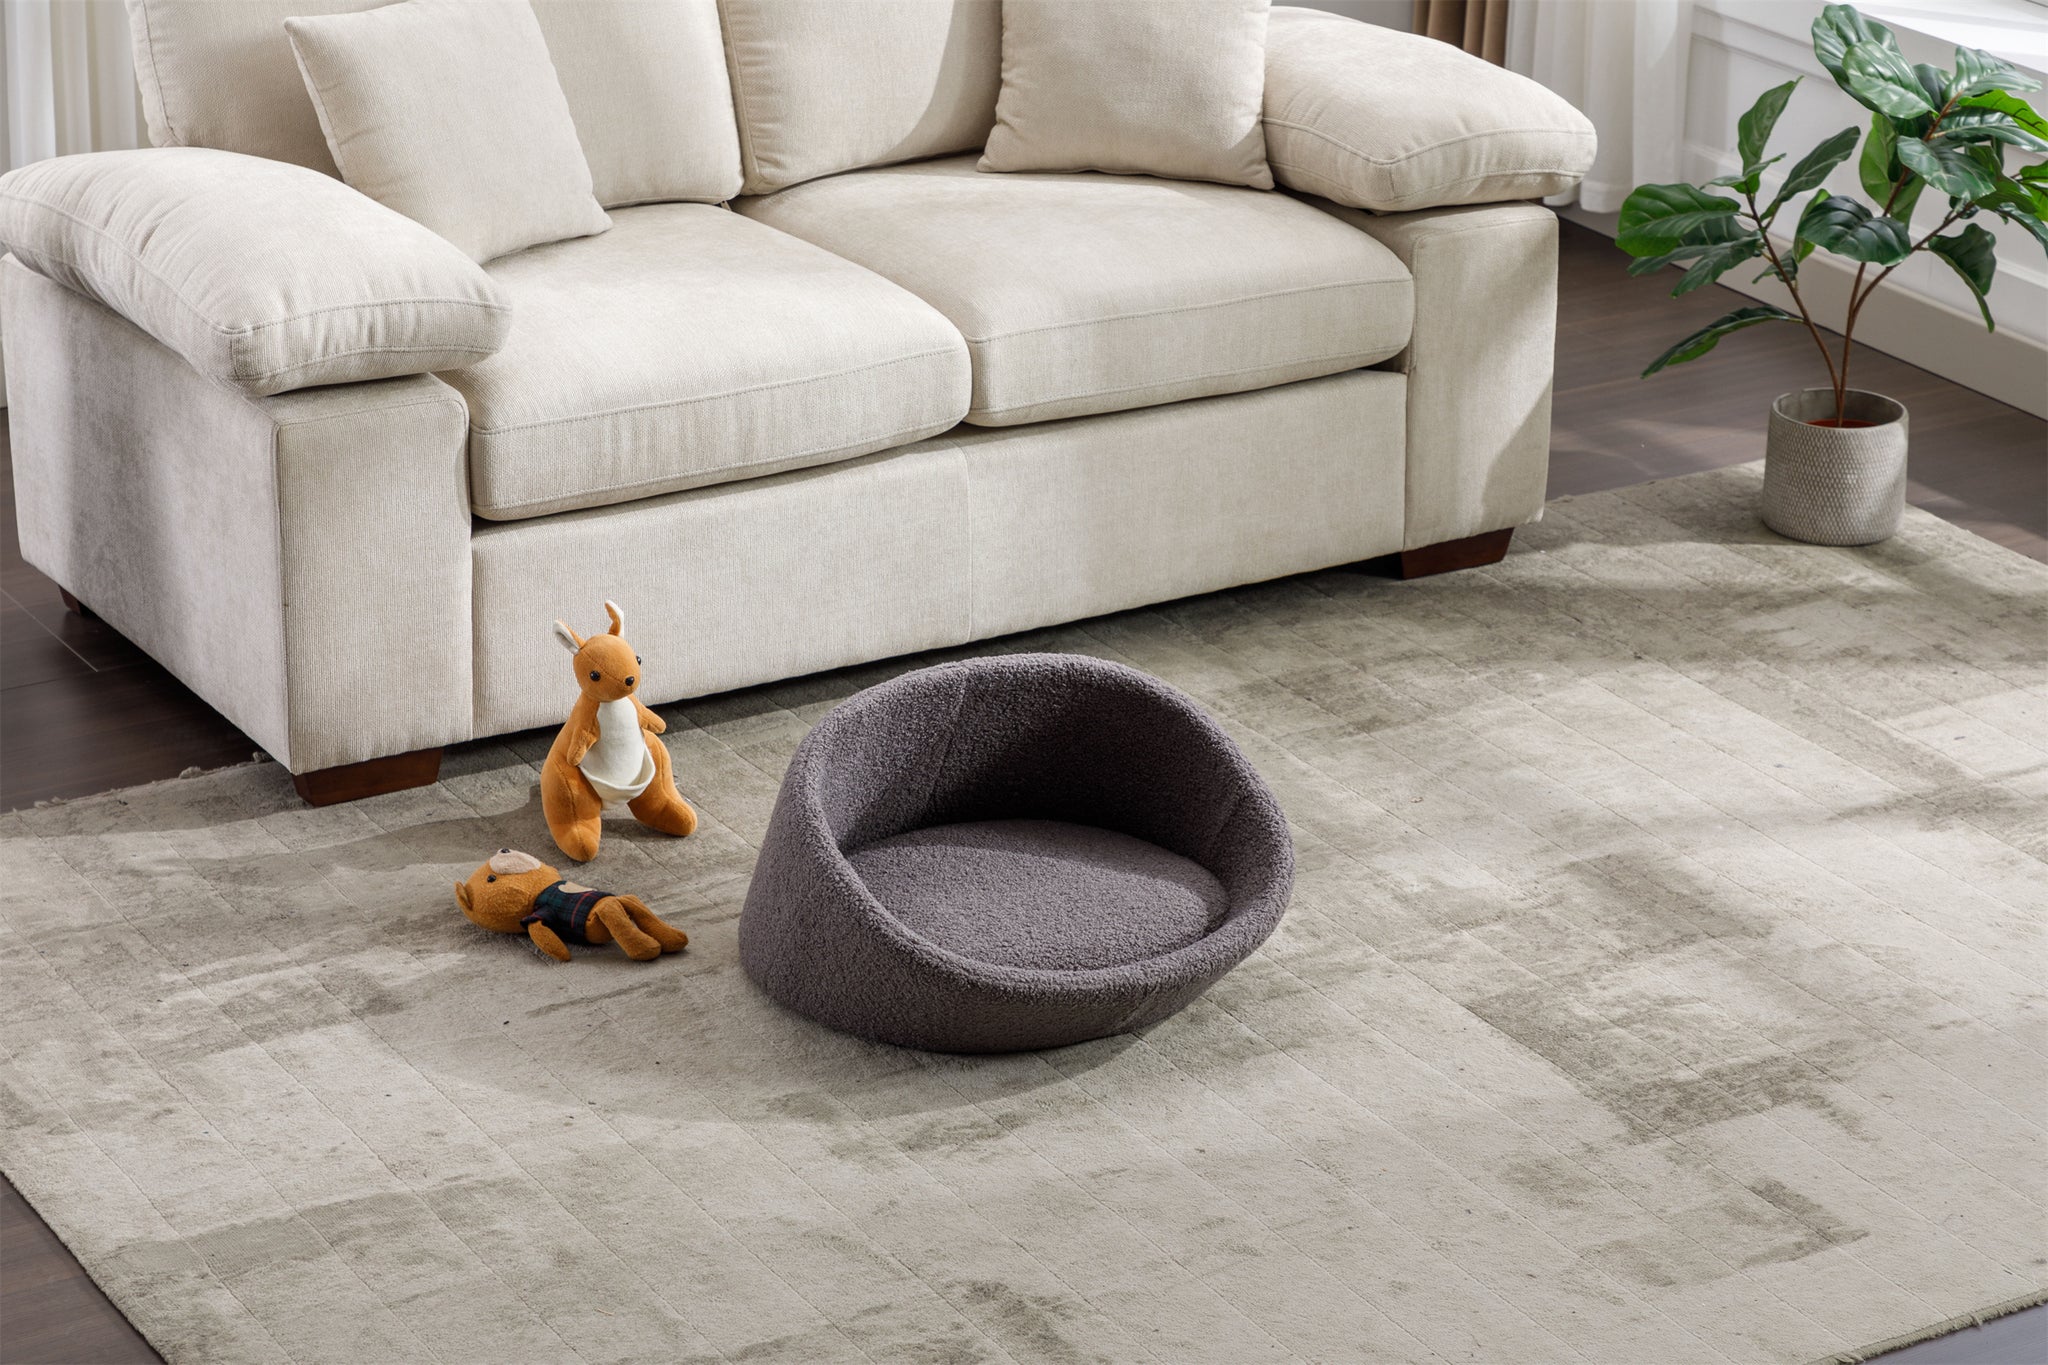 PANGPANG Cat Bed Pet Sofa With Solid Wood frame grey-memory foam-american design-cat-small (11 -